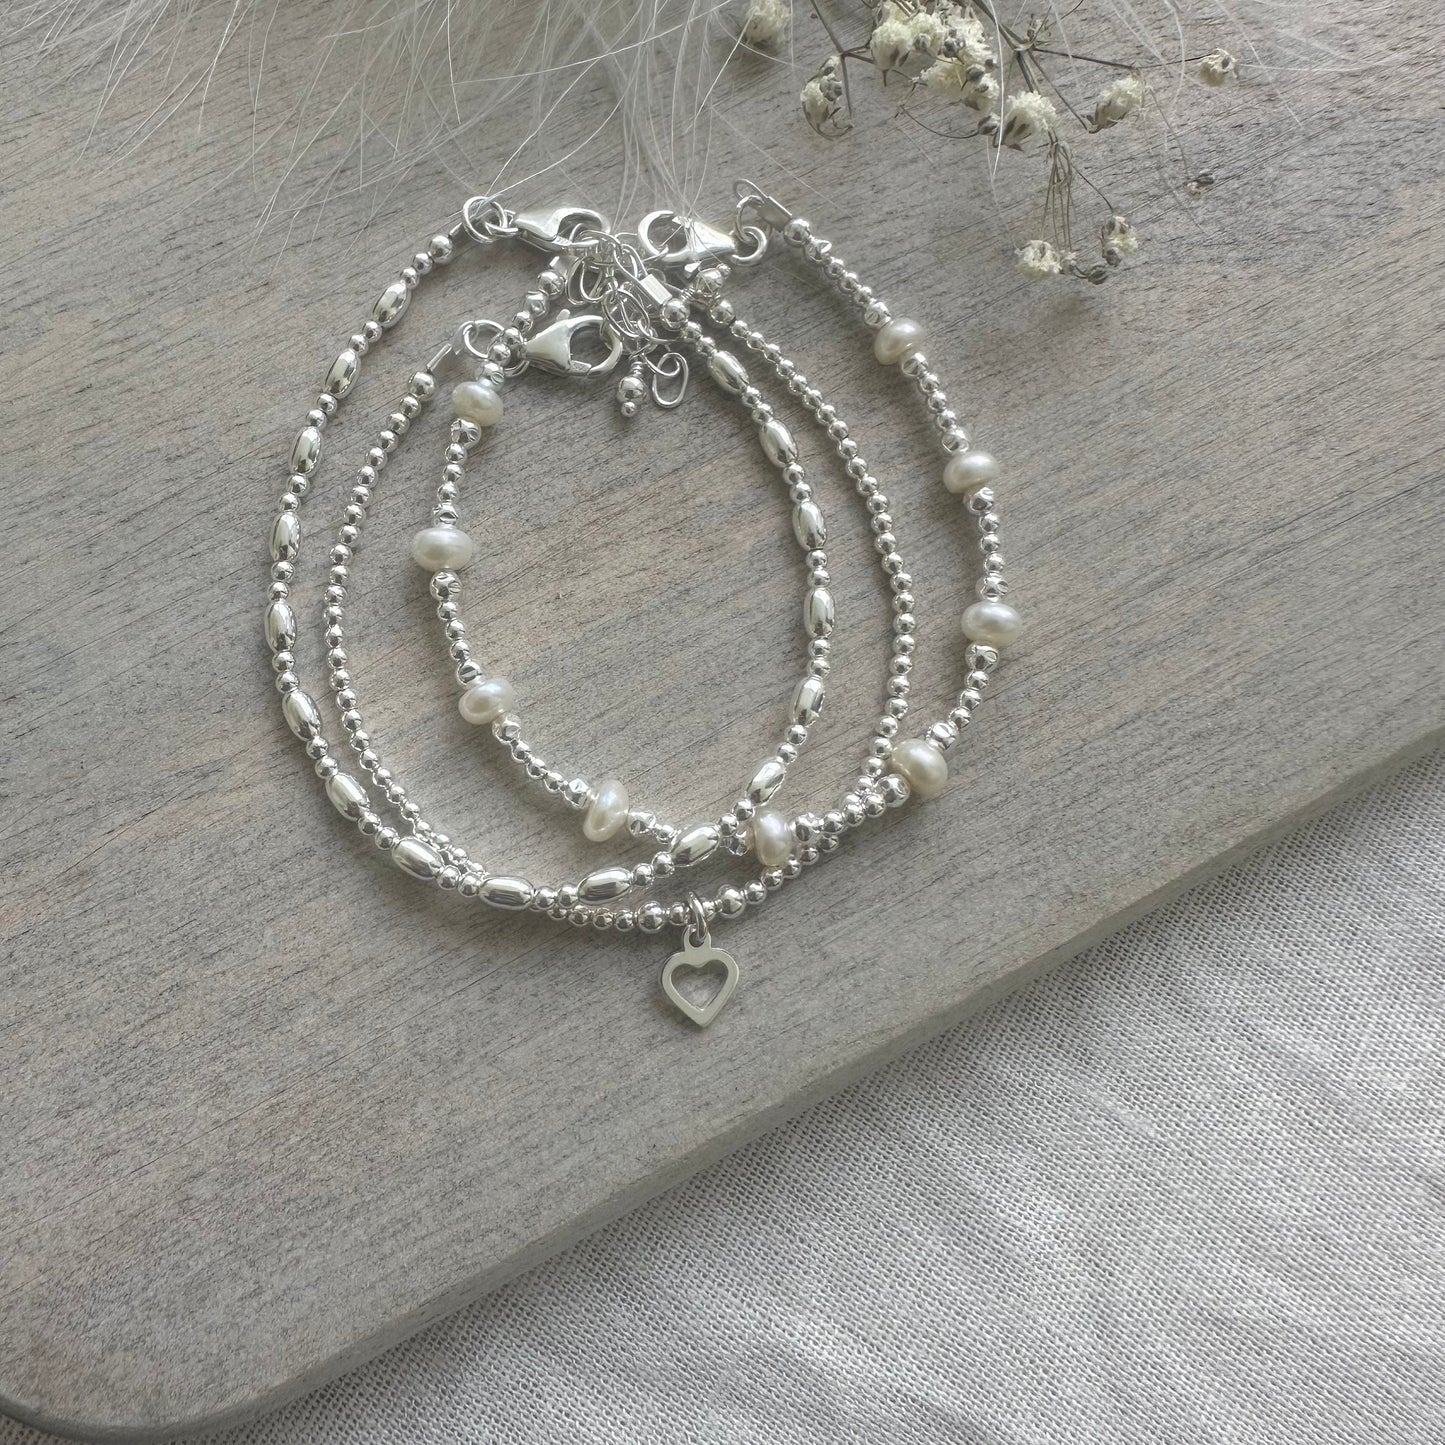 A Dainty June Birthstone Pearl Bracelet Set, June Stacking Bracelets for Women in Sterling Silver